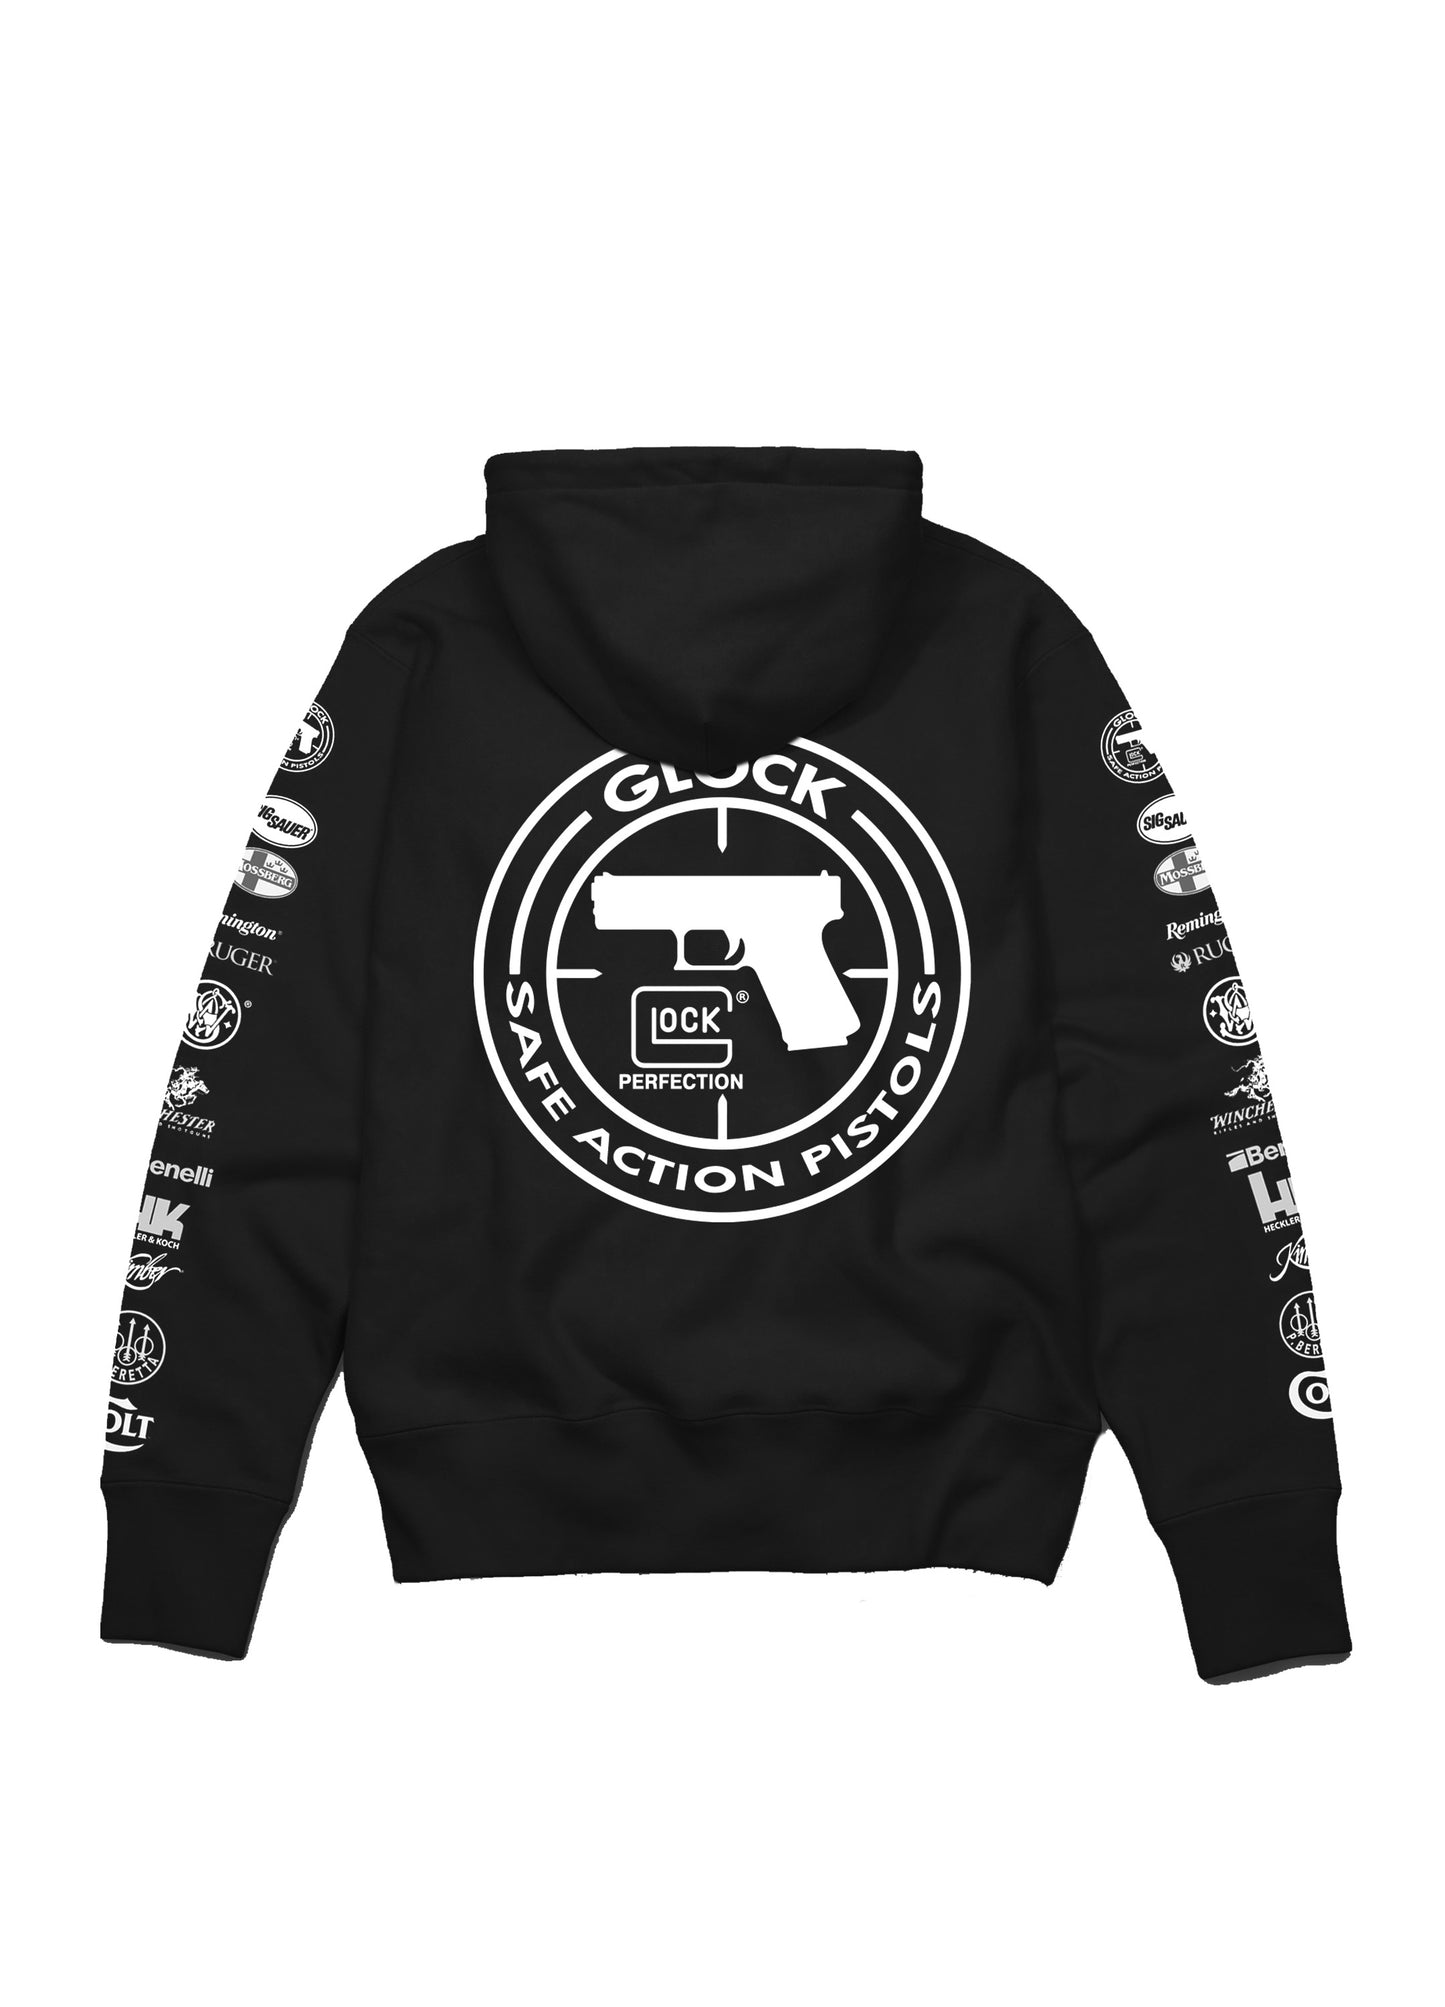 Gun Shop Sleeved Logos Hoodie Black